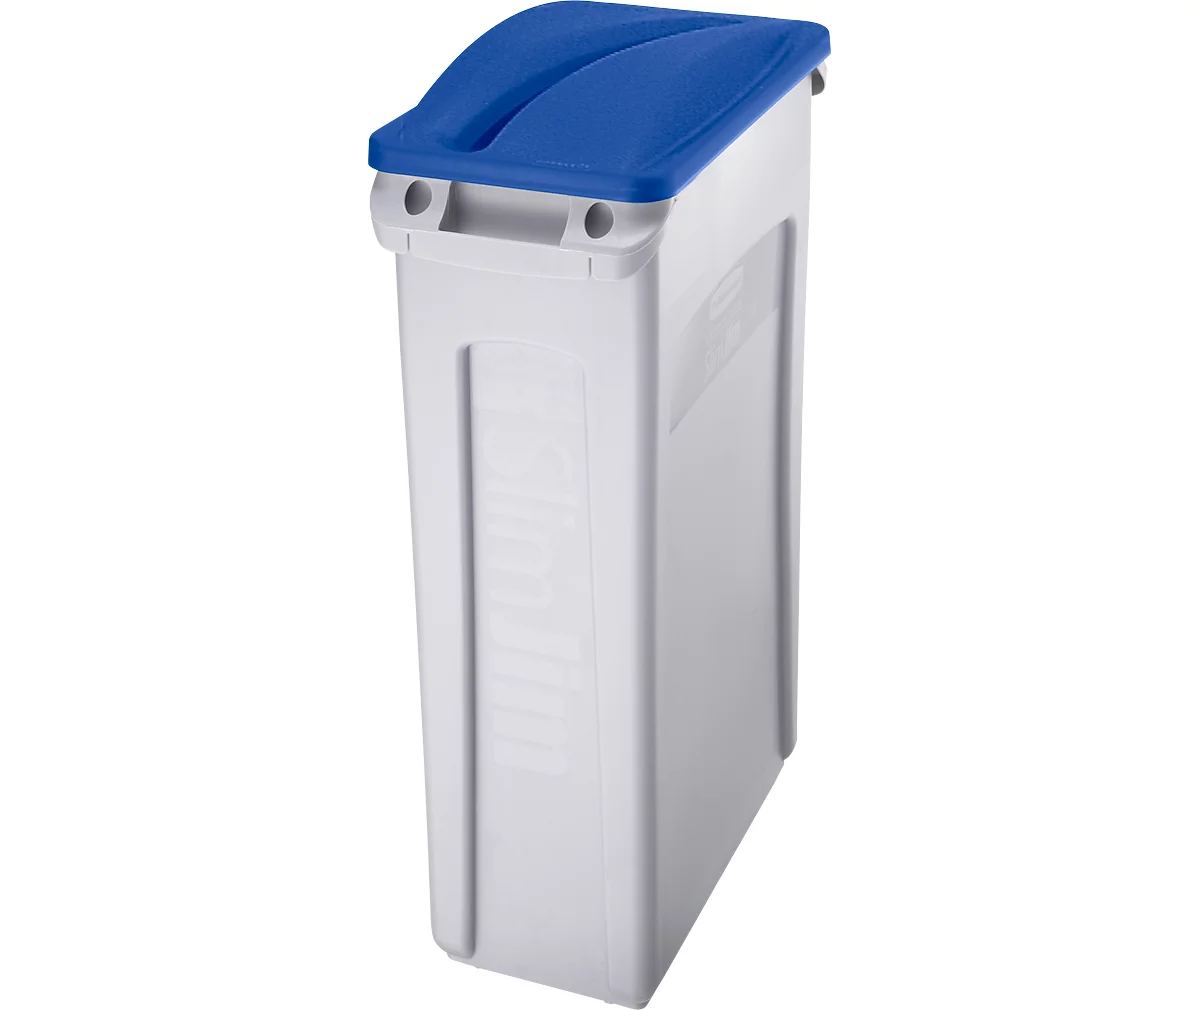 Deckel für Papiereinwurf, für Abfallbehälter Slim Jim®, blau